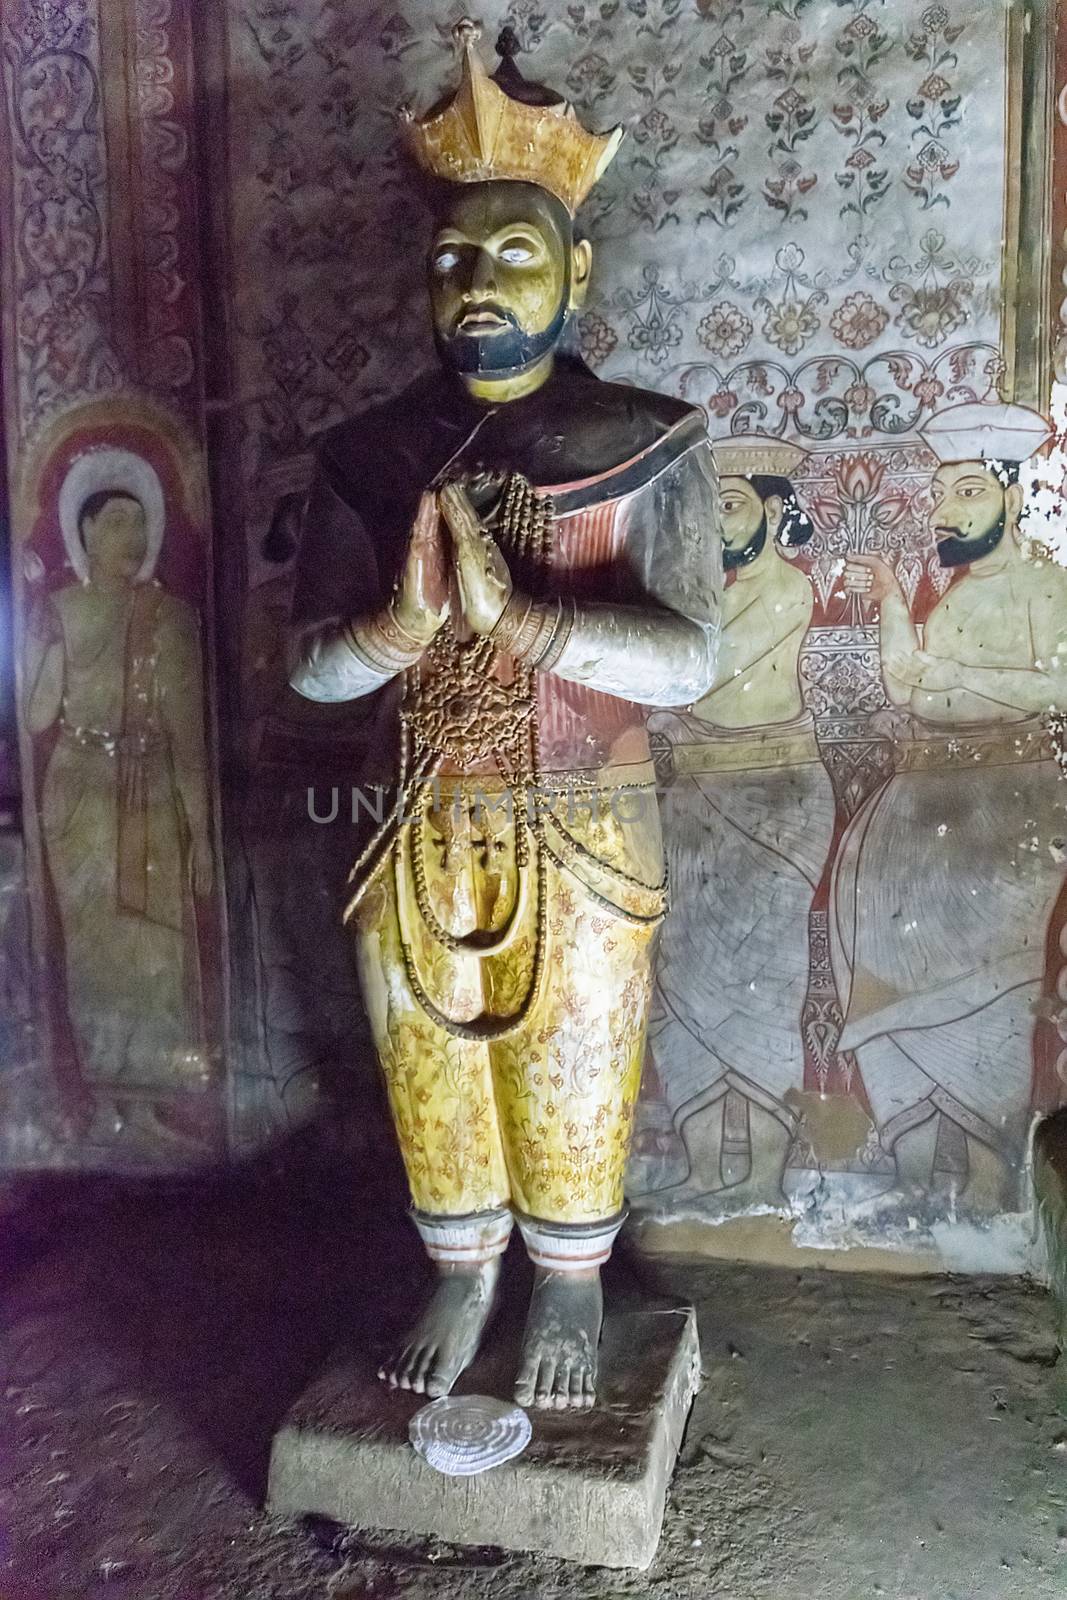 Dambulla, Sri Lanka, Aug 2015: Statue of King Nissanka Malla, Maha Viharaya Alut, standing in the Golden Temple